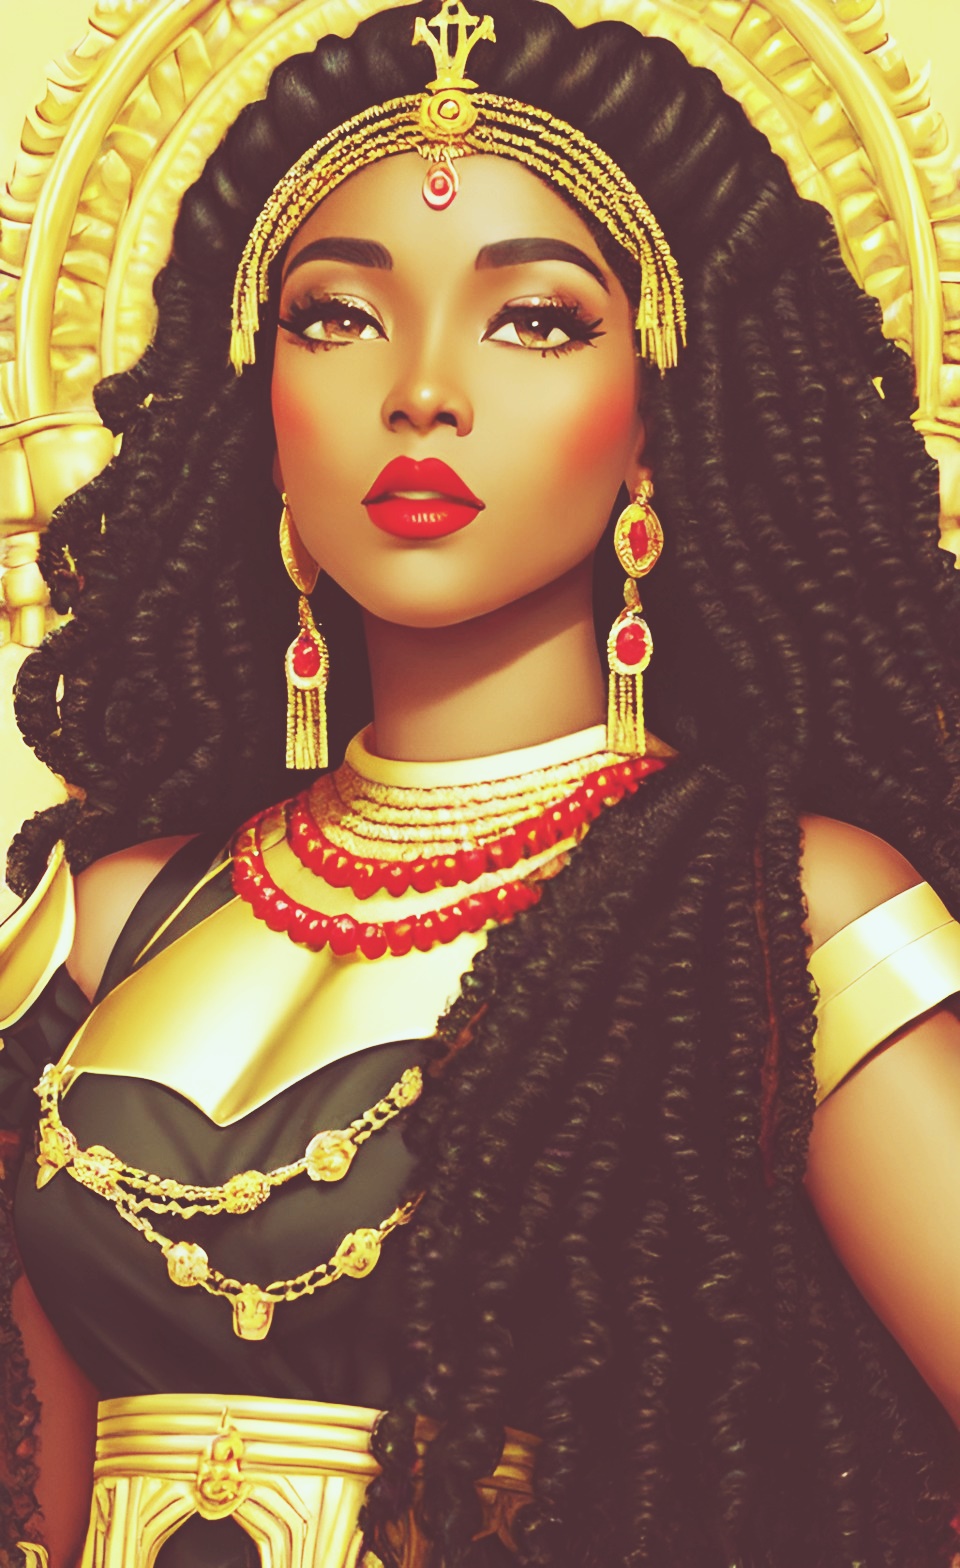 Mixed-race Queen of SHEBA art work Mixed422